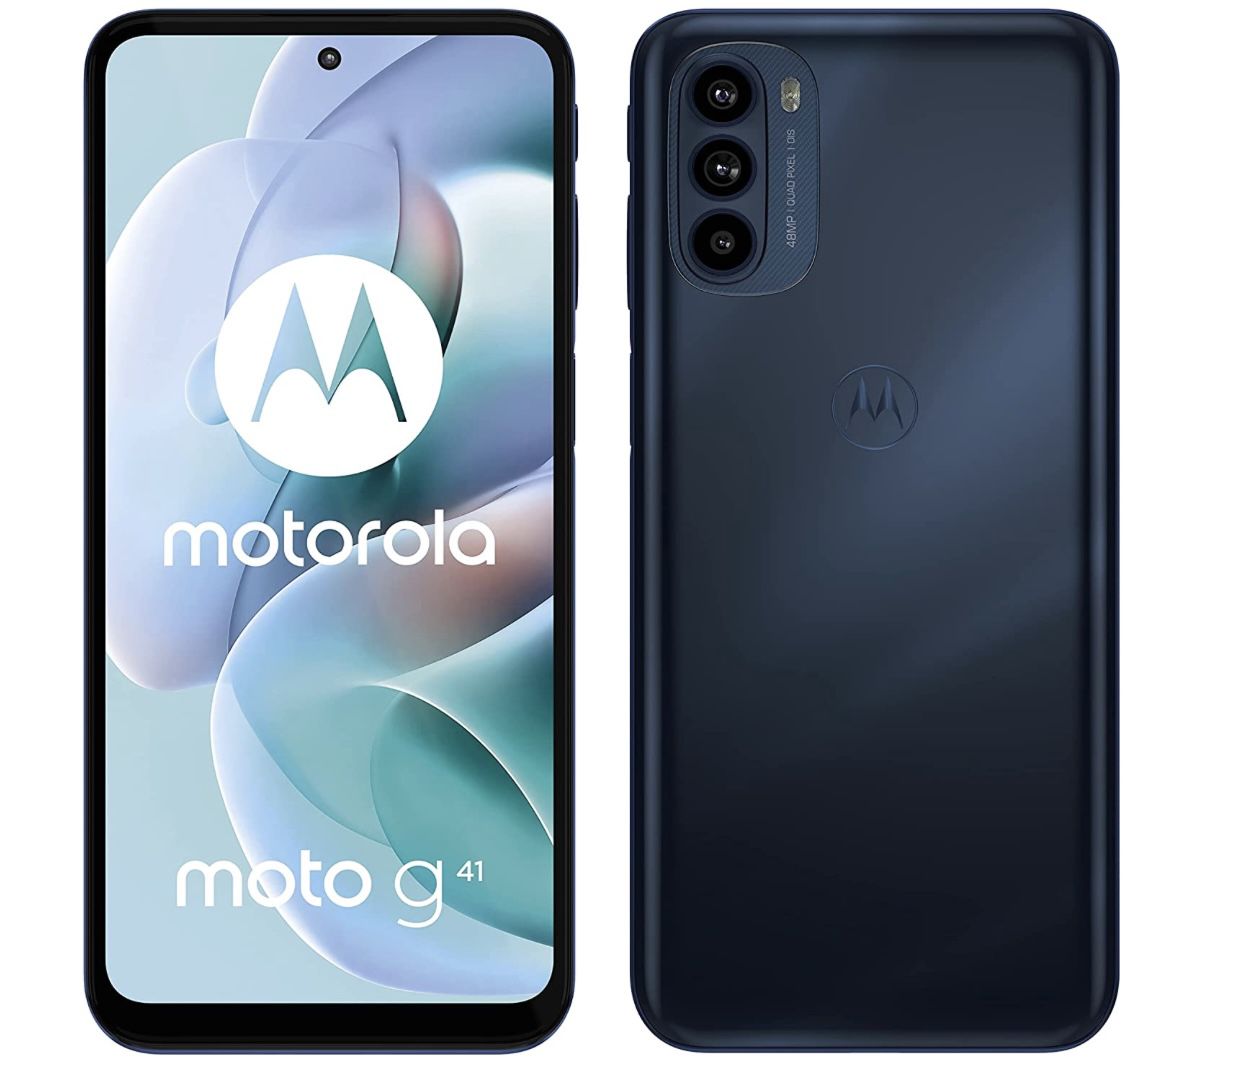 Motorola Moto g41 Smartphone mit 6/128 GB & 48 MP Kamera in Meteorite Black für 199,99€ (statt 229€)